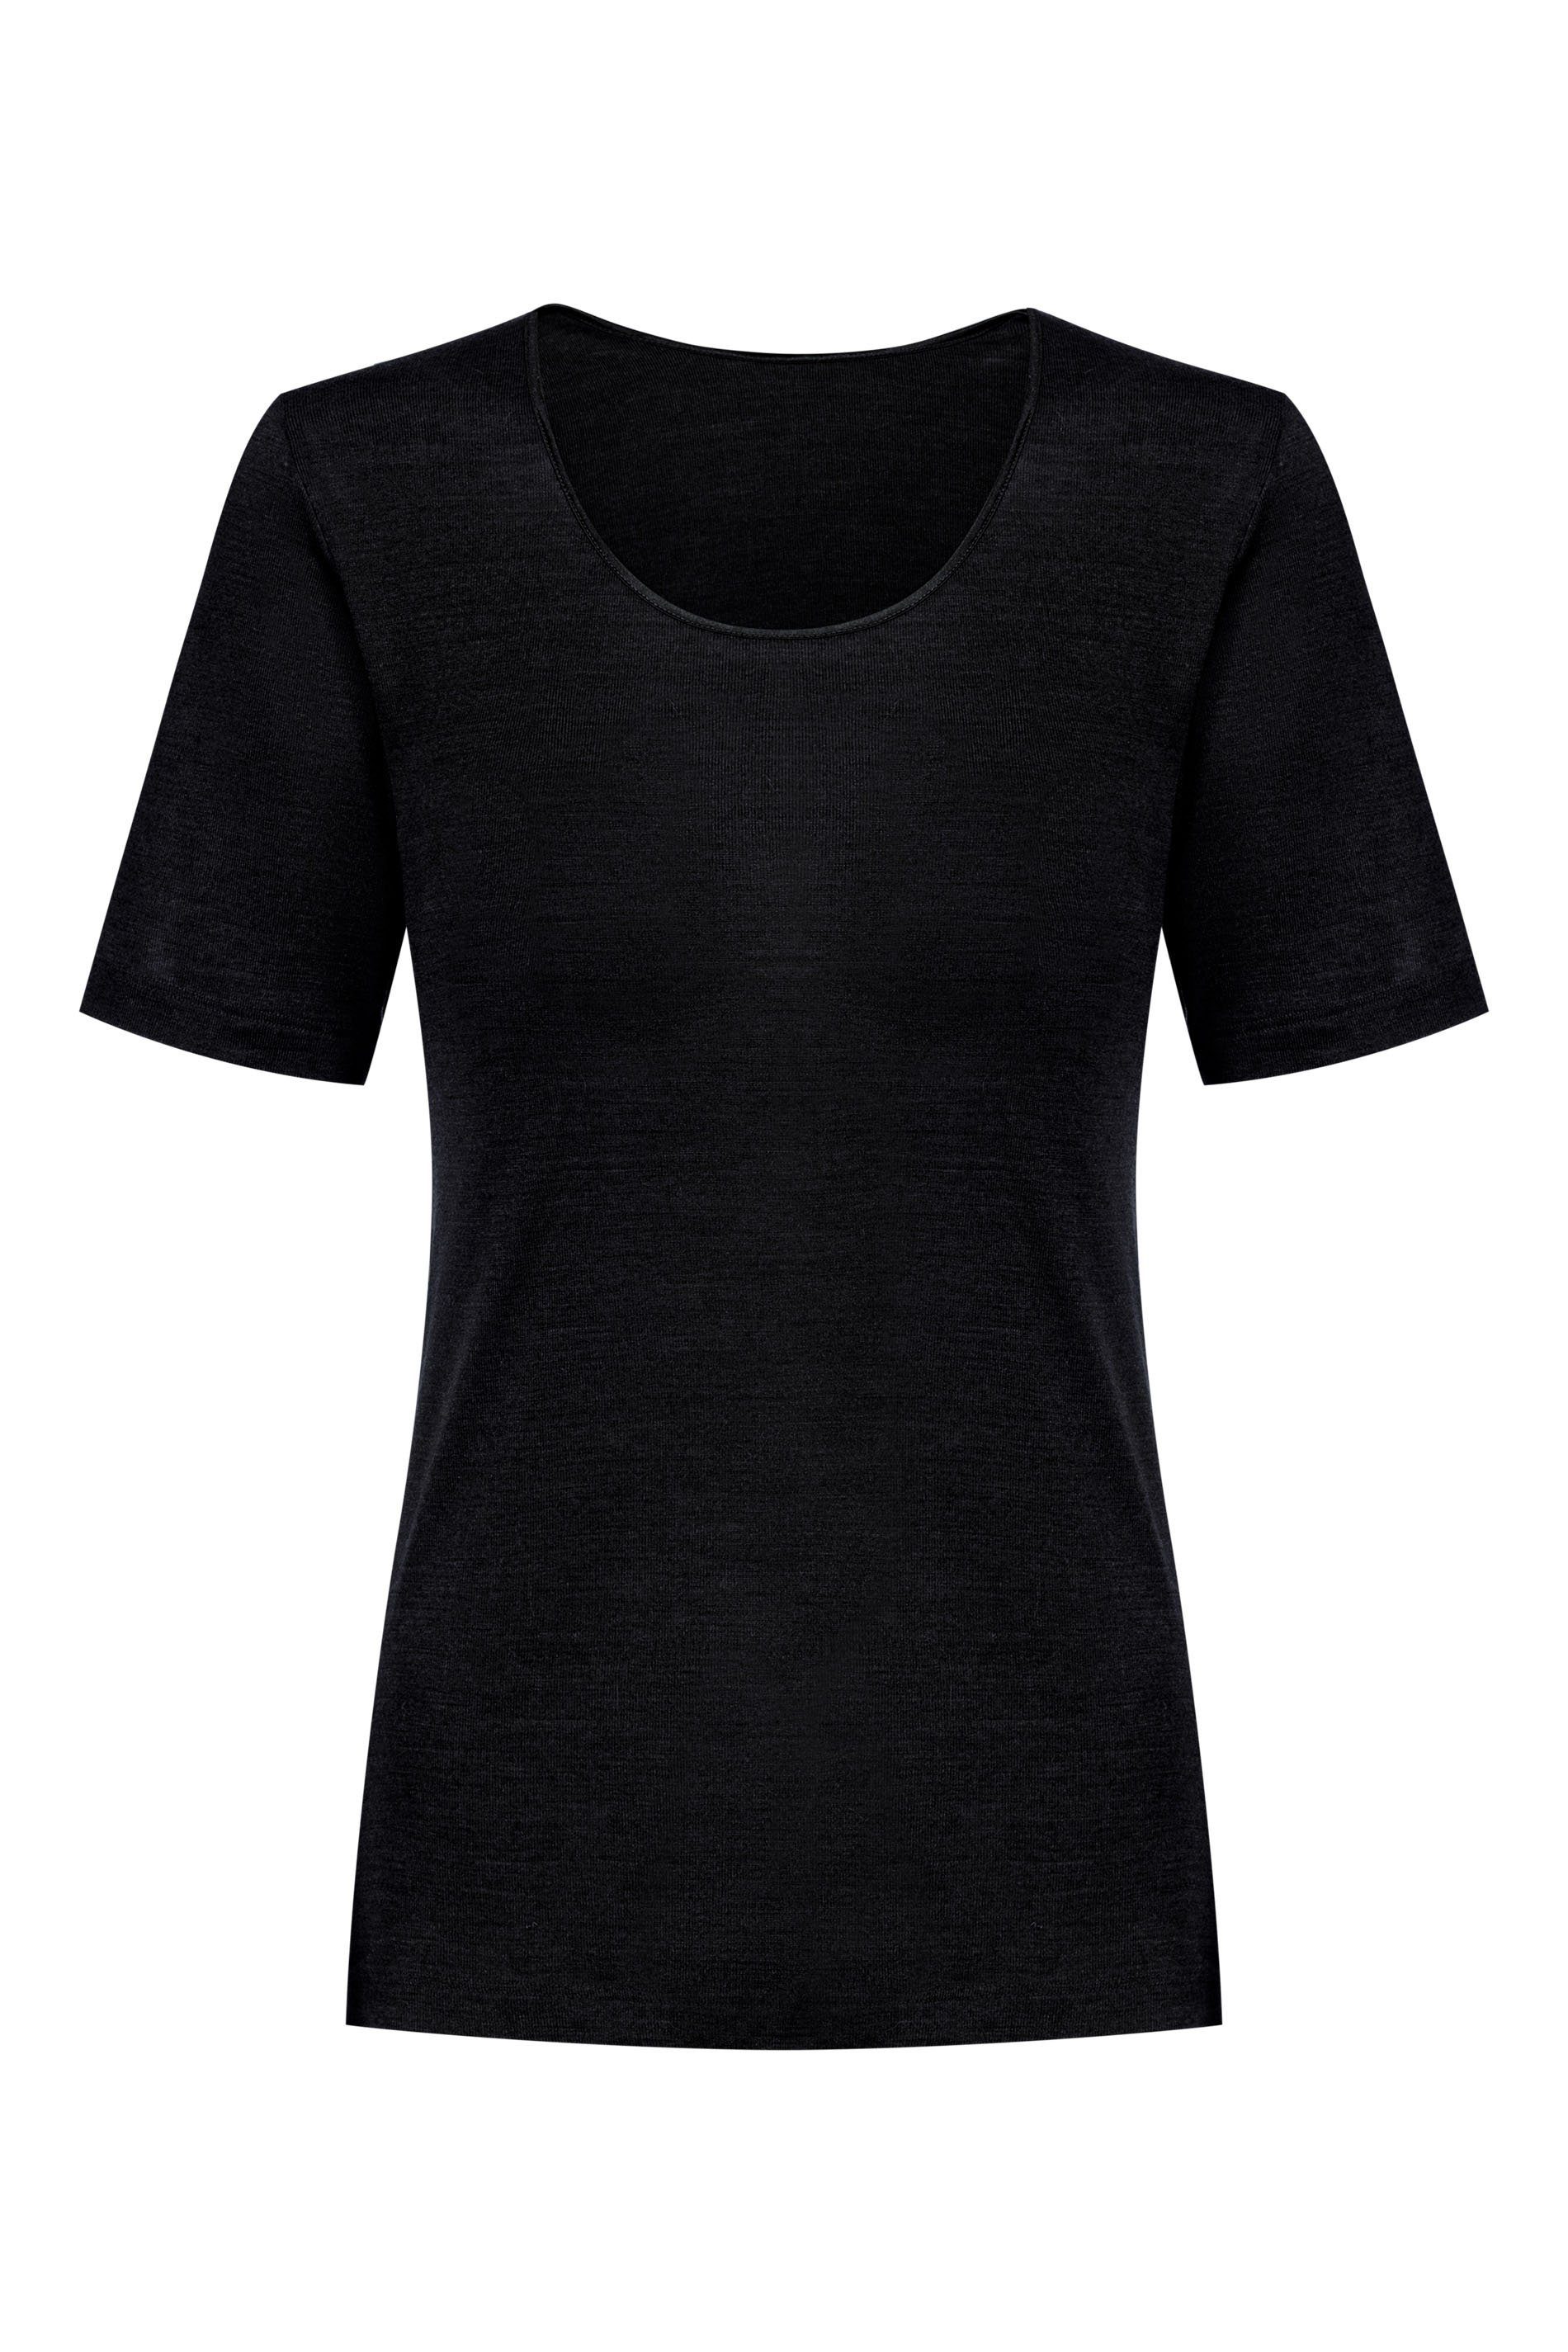 schwarz (1 Stück) wärmend 66576 1 Shirt 1-St., Mey Exquisite Stück, Thermounterhemd Mey Serie